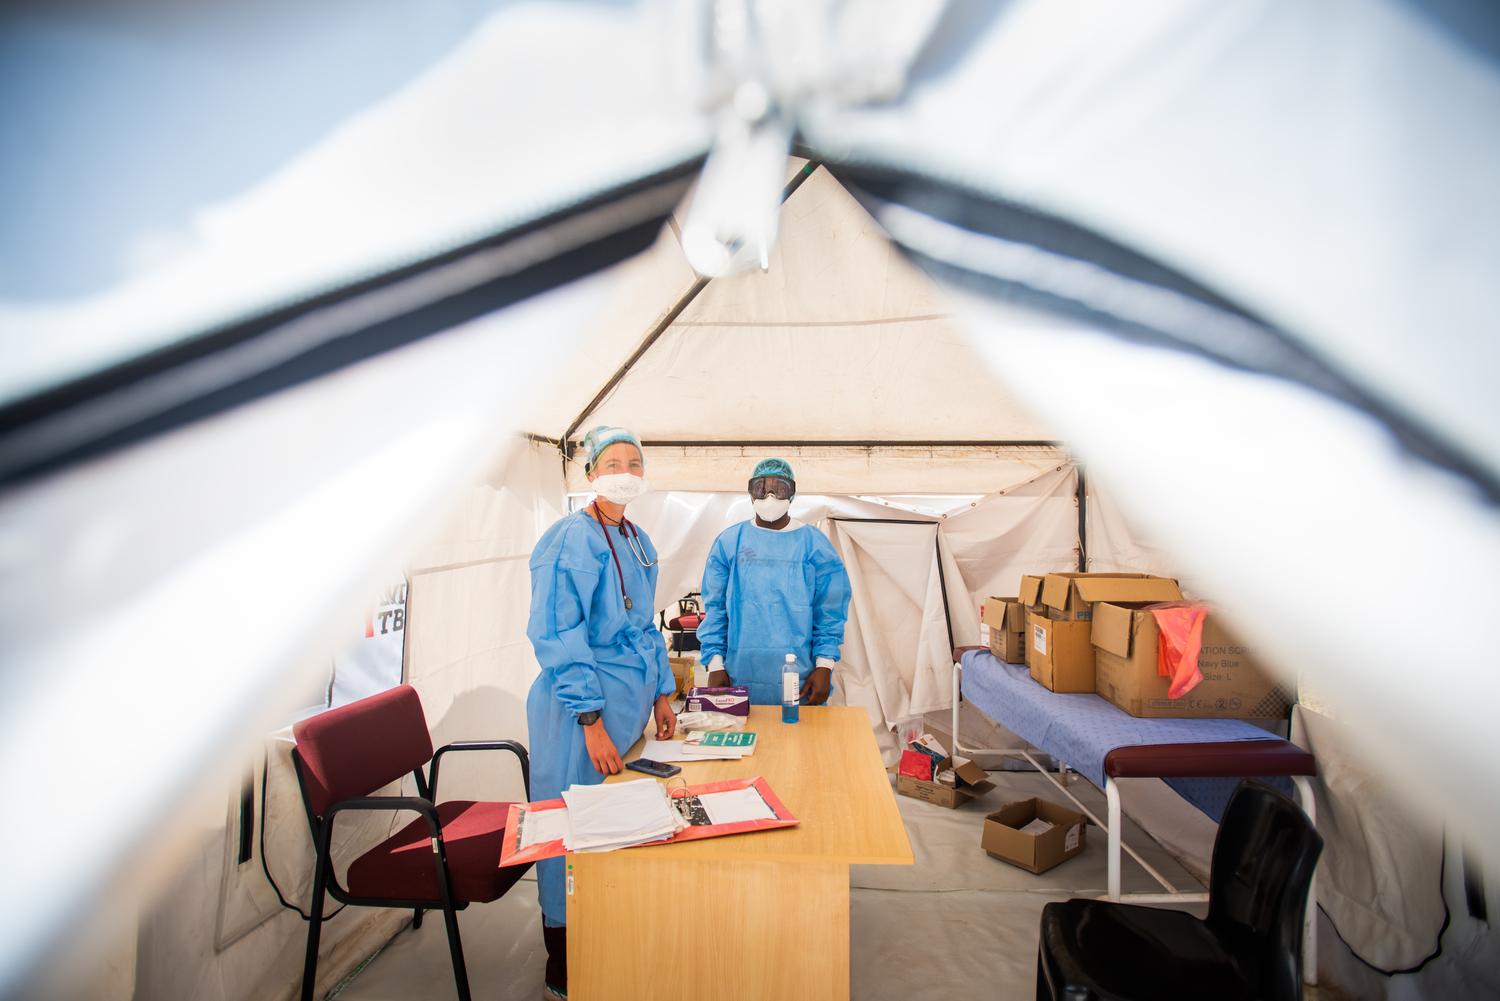 Le Dr Helene Muller et Buhle Nkomonde, infirmière, dans la tente de dépistage et de test Covid-19 à l'hôpital du district de Mbongolwane. Province de KwaZulu-Natal, Afrique du Sud, août 2020. 